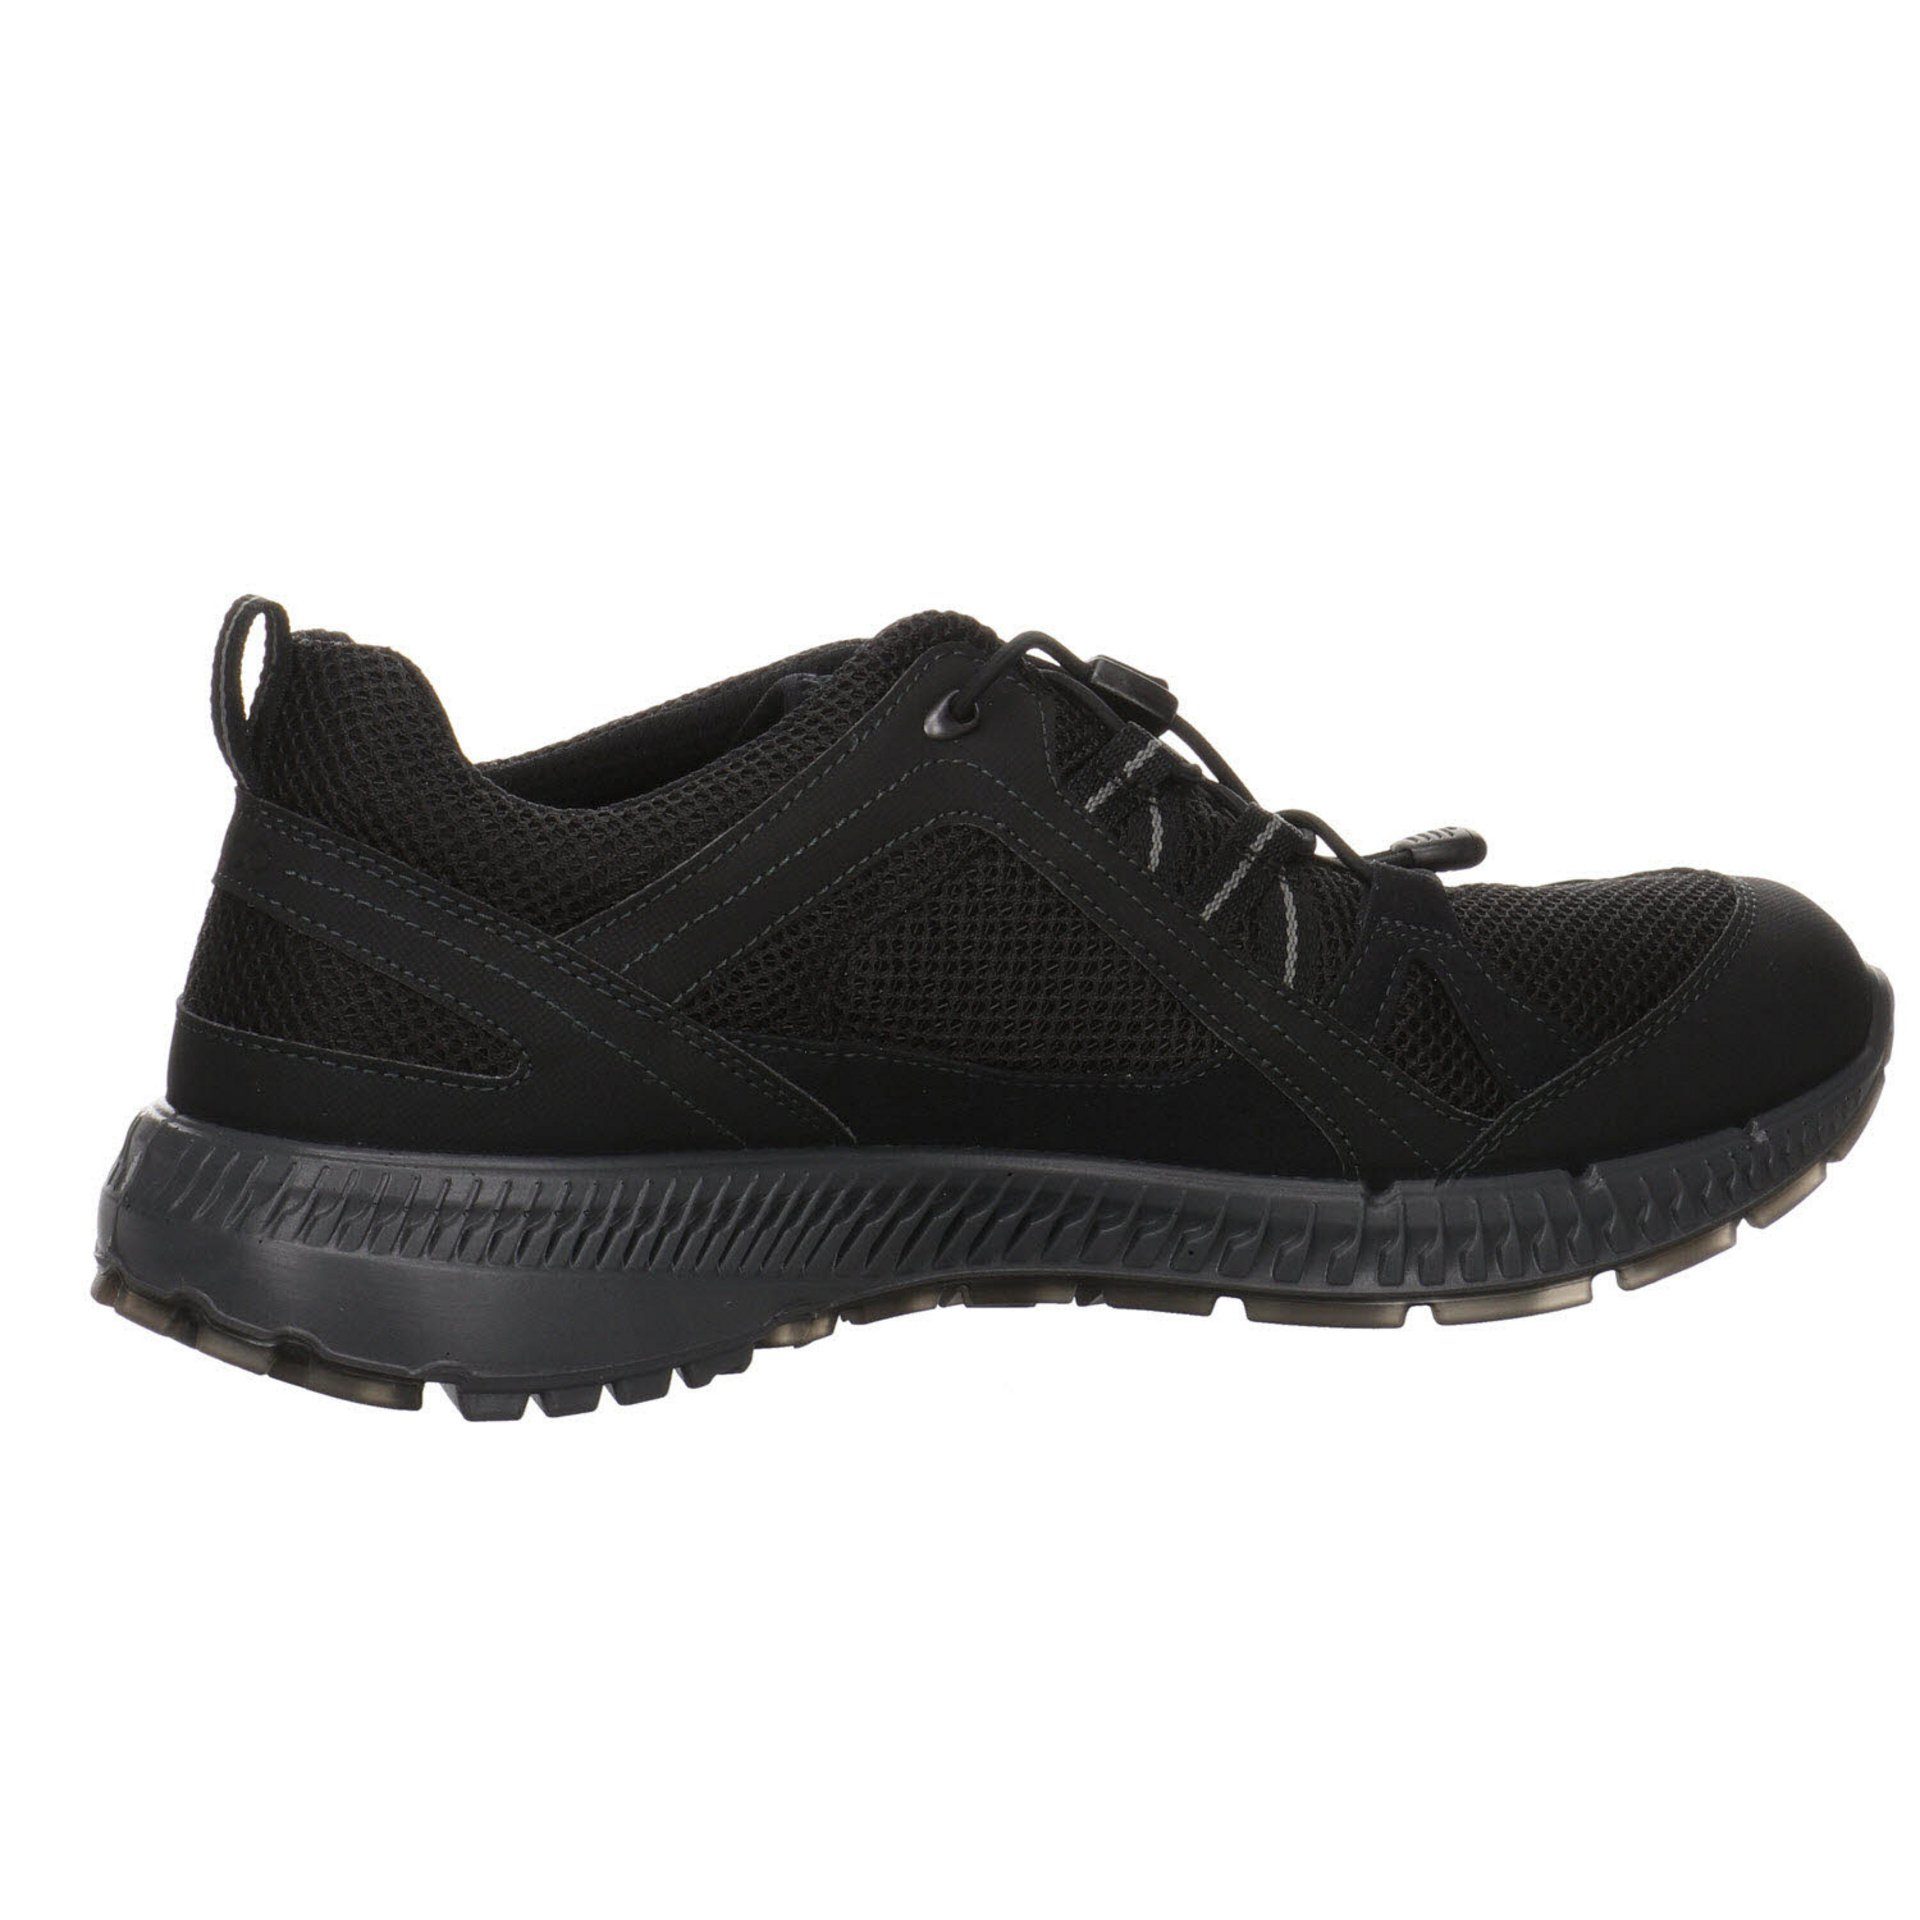 Ecco Herren Outdoor Schuhe GTX Synthetikkombination Terracruise schwarz Outdoorschuh dunkel Outdoorschuh